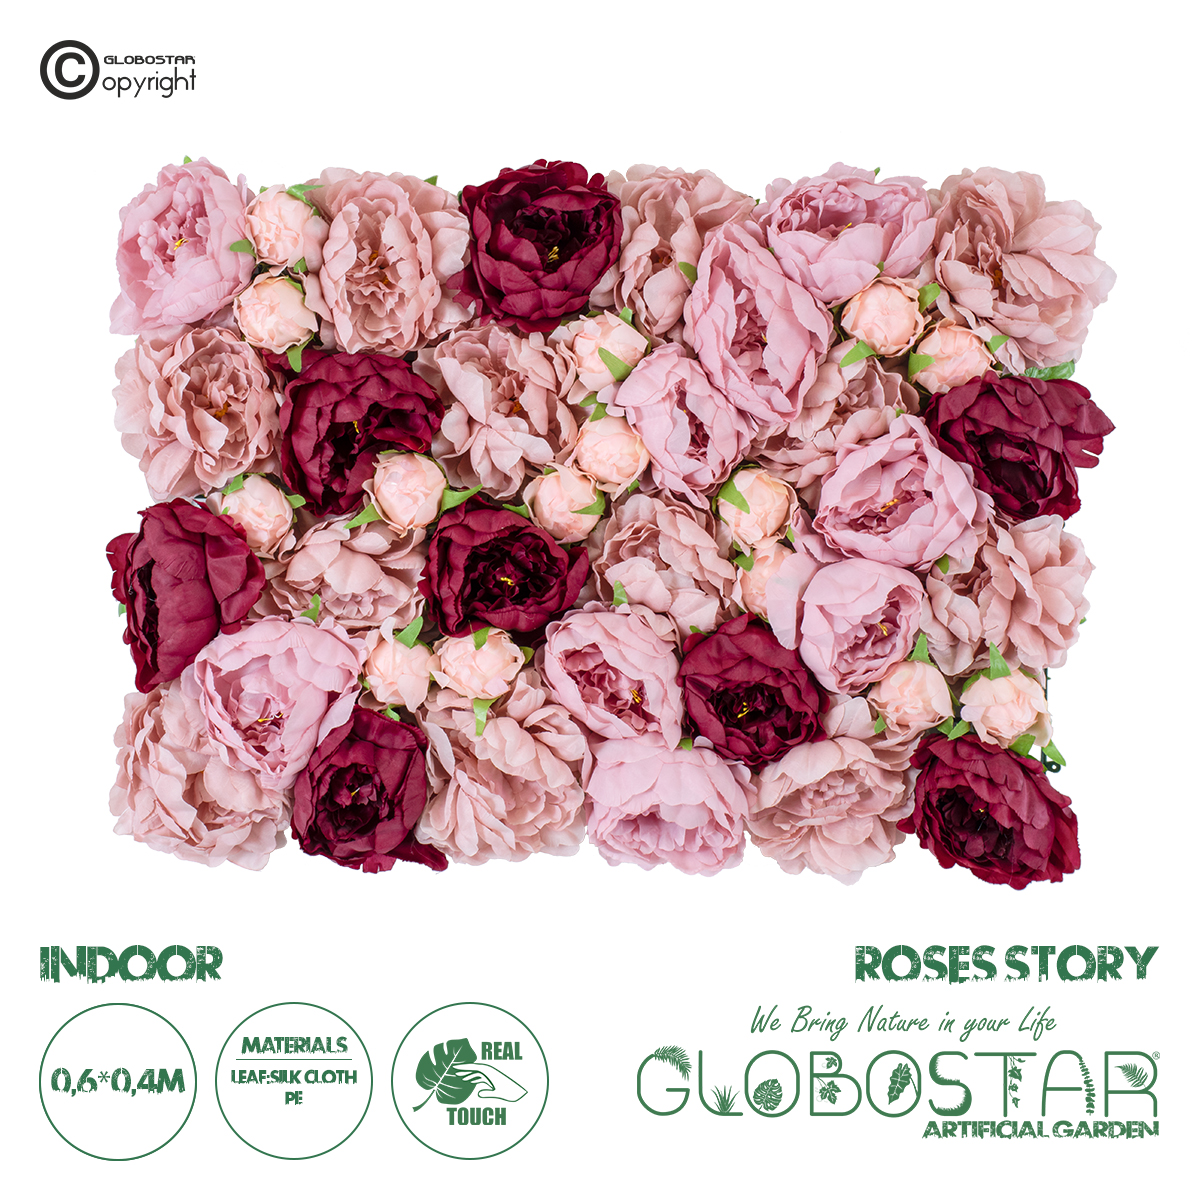 GloboStar® Artificial Garden ROSES STORY 20355 Τεχνητό Διακοσμητικό Πάνελ Λουλουδιών – Κάθετος Κήπος σύνθεση Ροζ & Βυσσινί Τριαντάφυλλα Μ40 x Π60 x Υ8cm